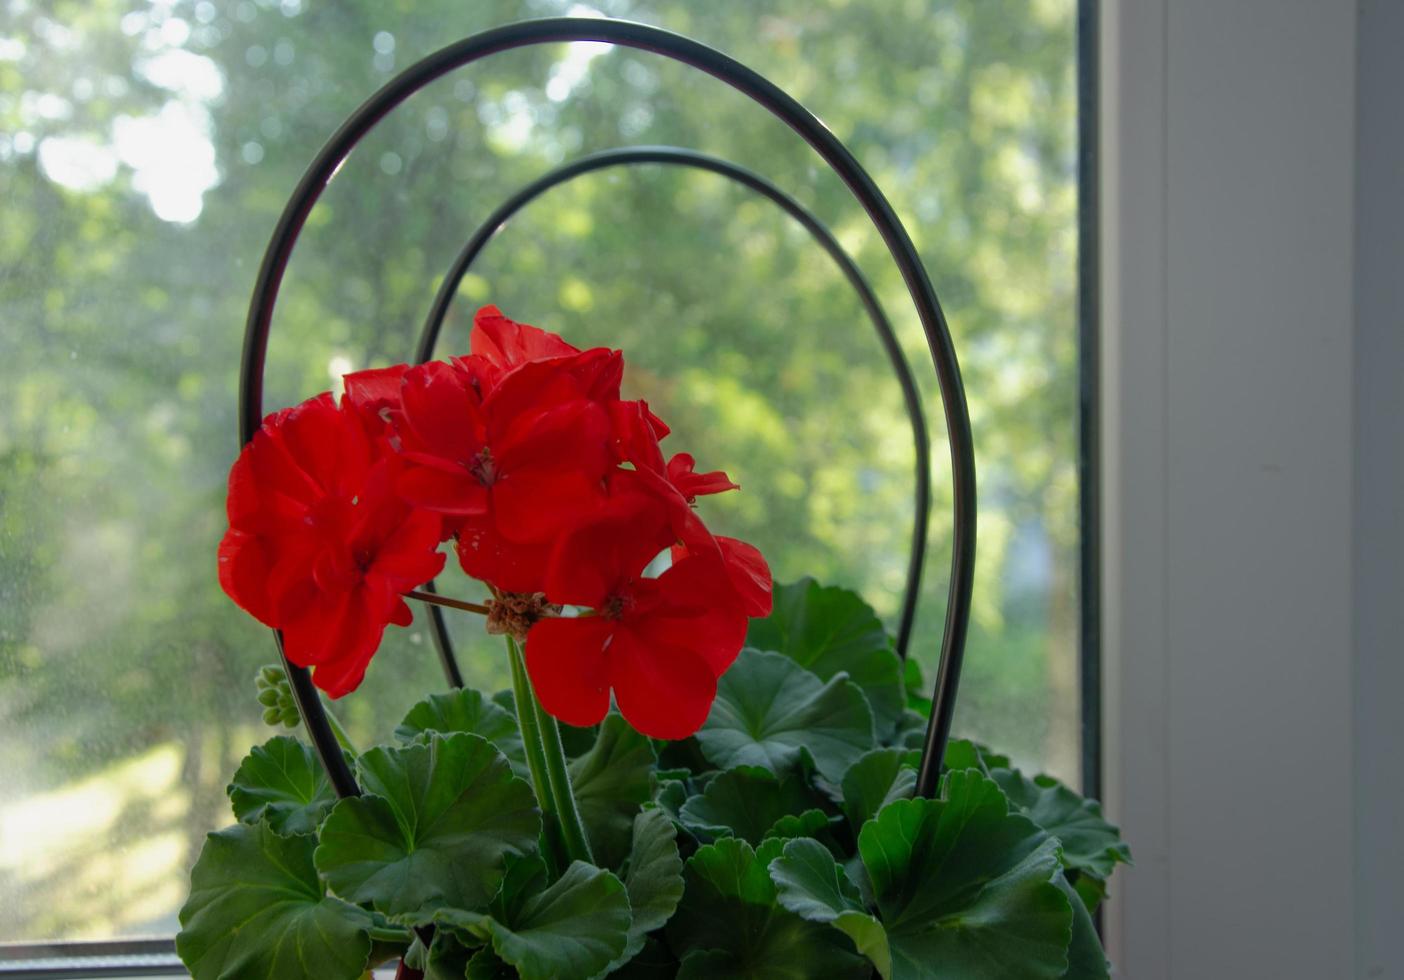 pelargonblomma med röda blommor på fönsterbrädan, krukväxt foto